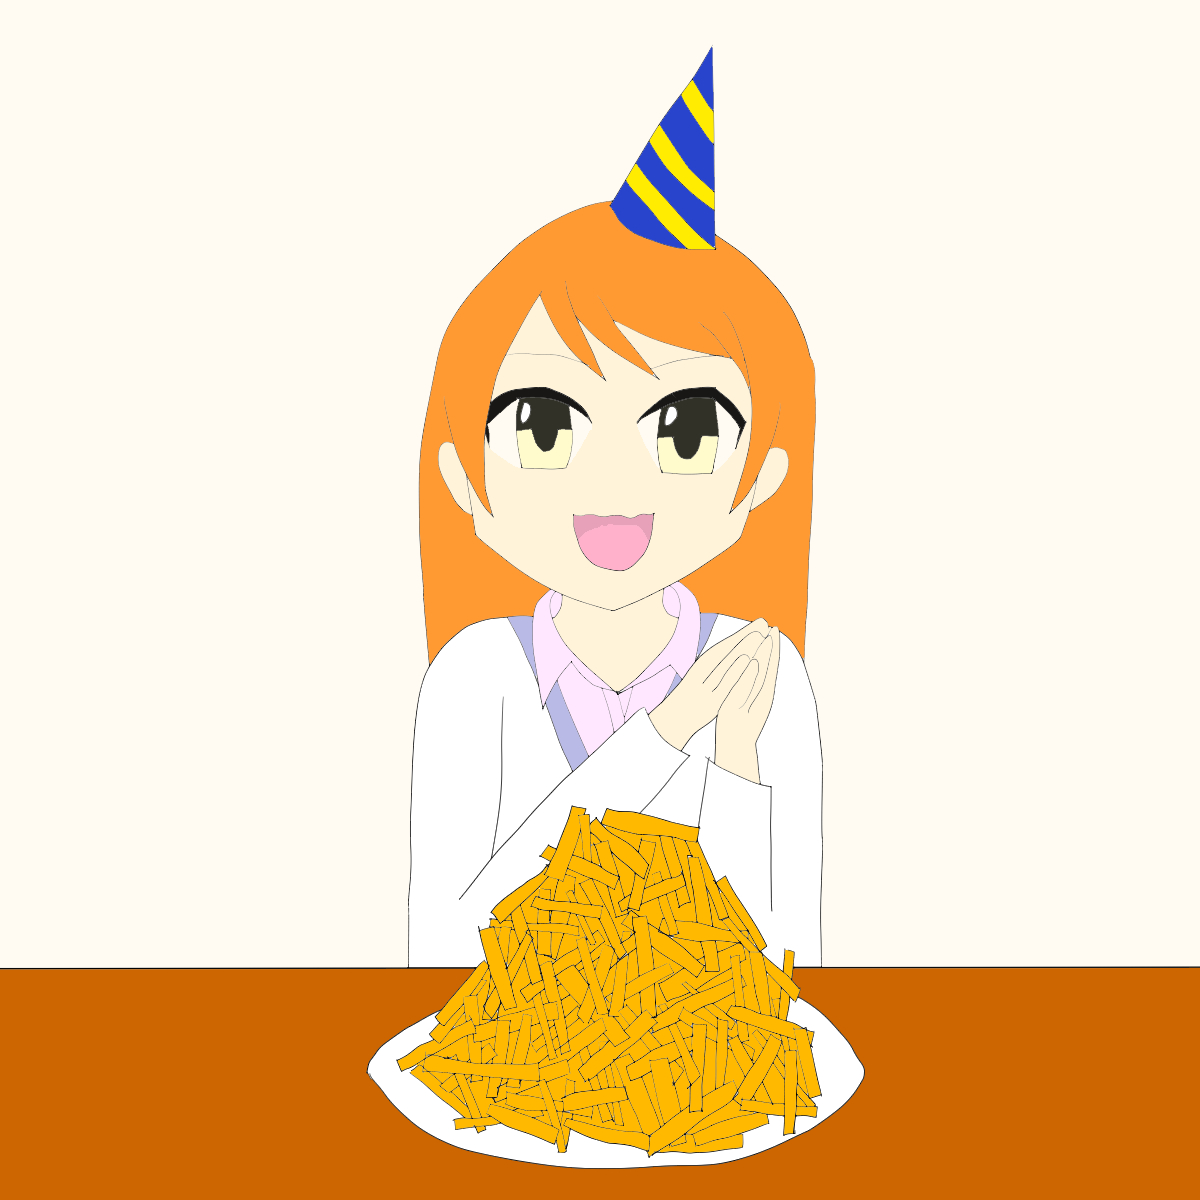 「北条加蓮さんお誕生日おめでとうございます!余ったポテトは奈緒が食べます#北条加蓮」|ししゃものイラスト